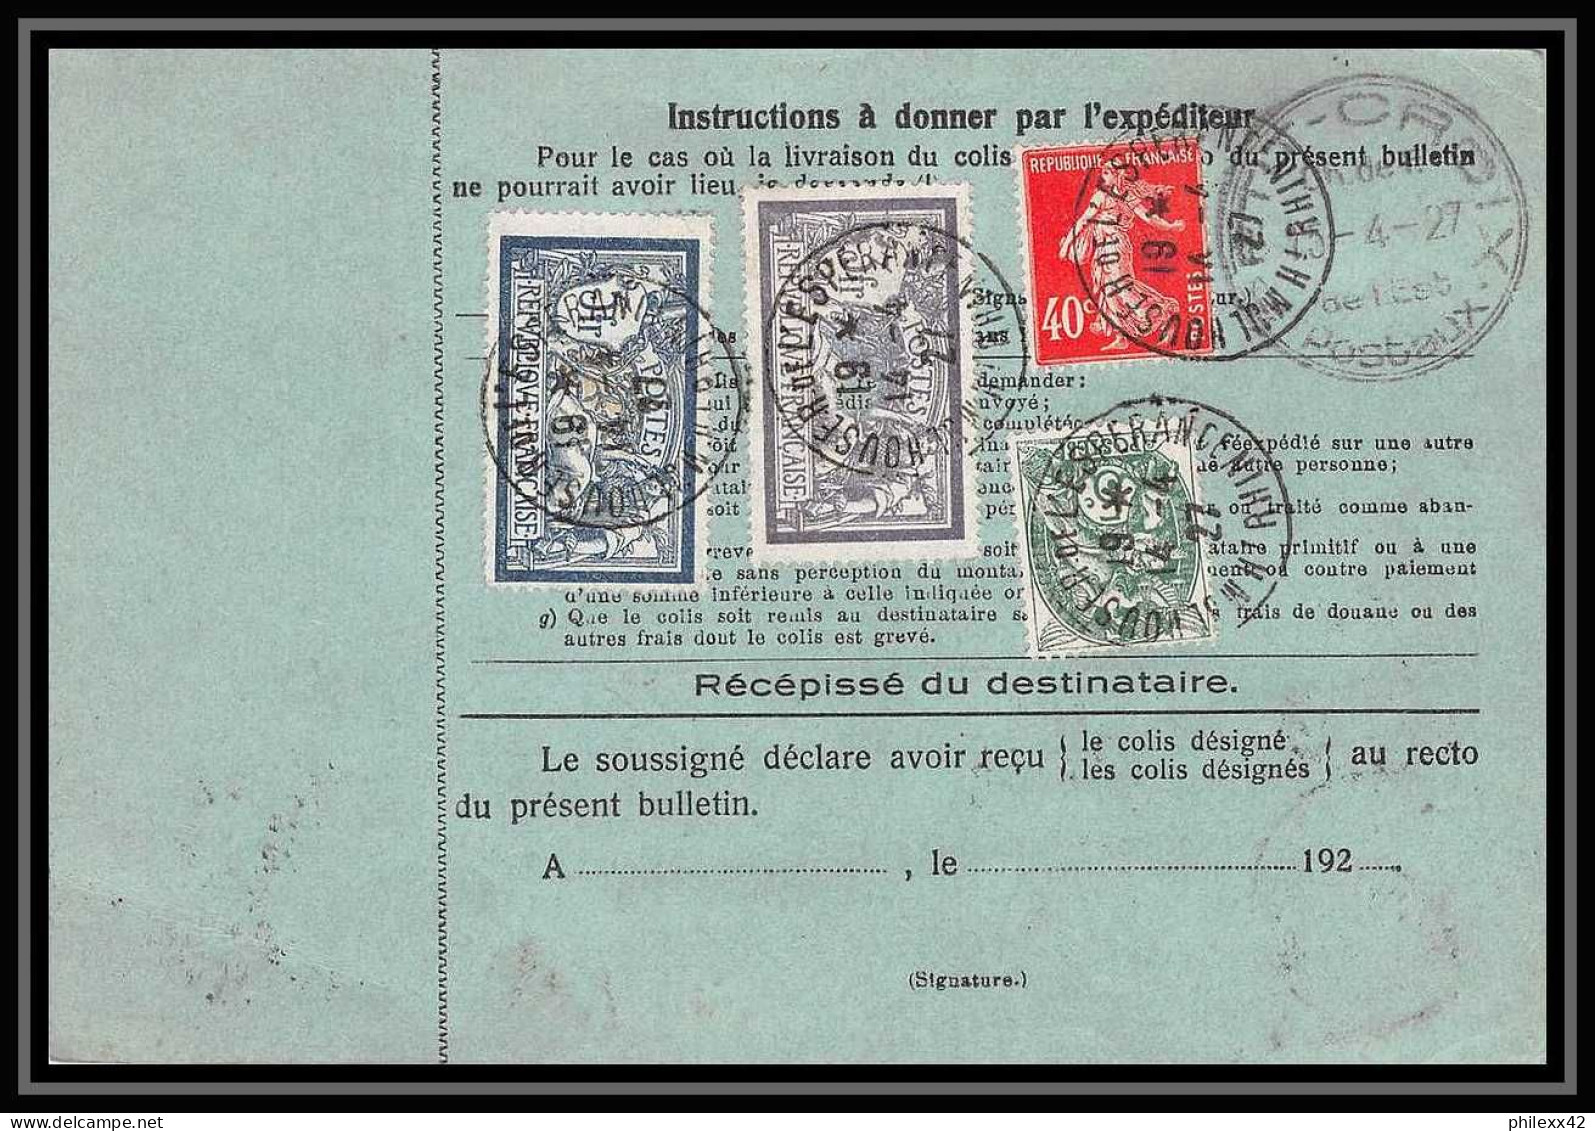 25023 Bulletin D'expédition France Colis Postaux Fiscal Haut Rhin - 1927 Mulhouse Merson 123+145 GARE - Brieven & Documenten